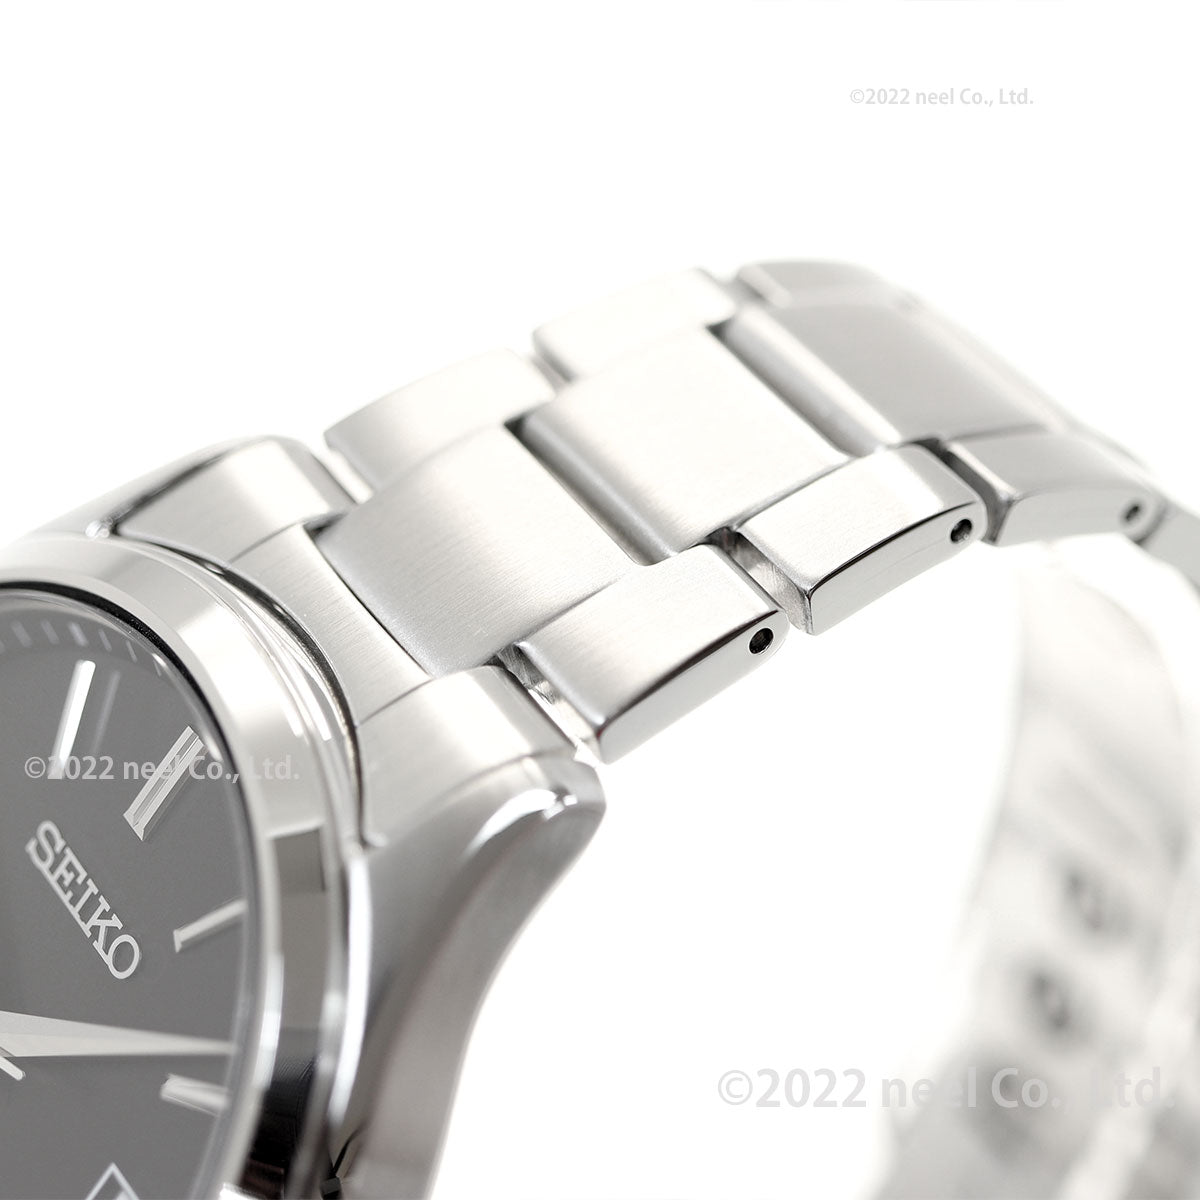 セイコー セレクション SEIKO SELECTION Sシリーズ ショップ専用 流通限定モデル ソーラー 腕時計 メンズ SBPX147